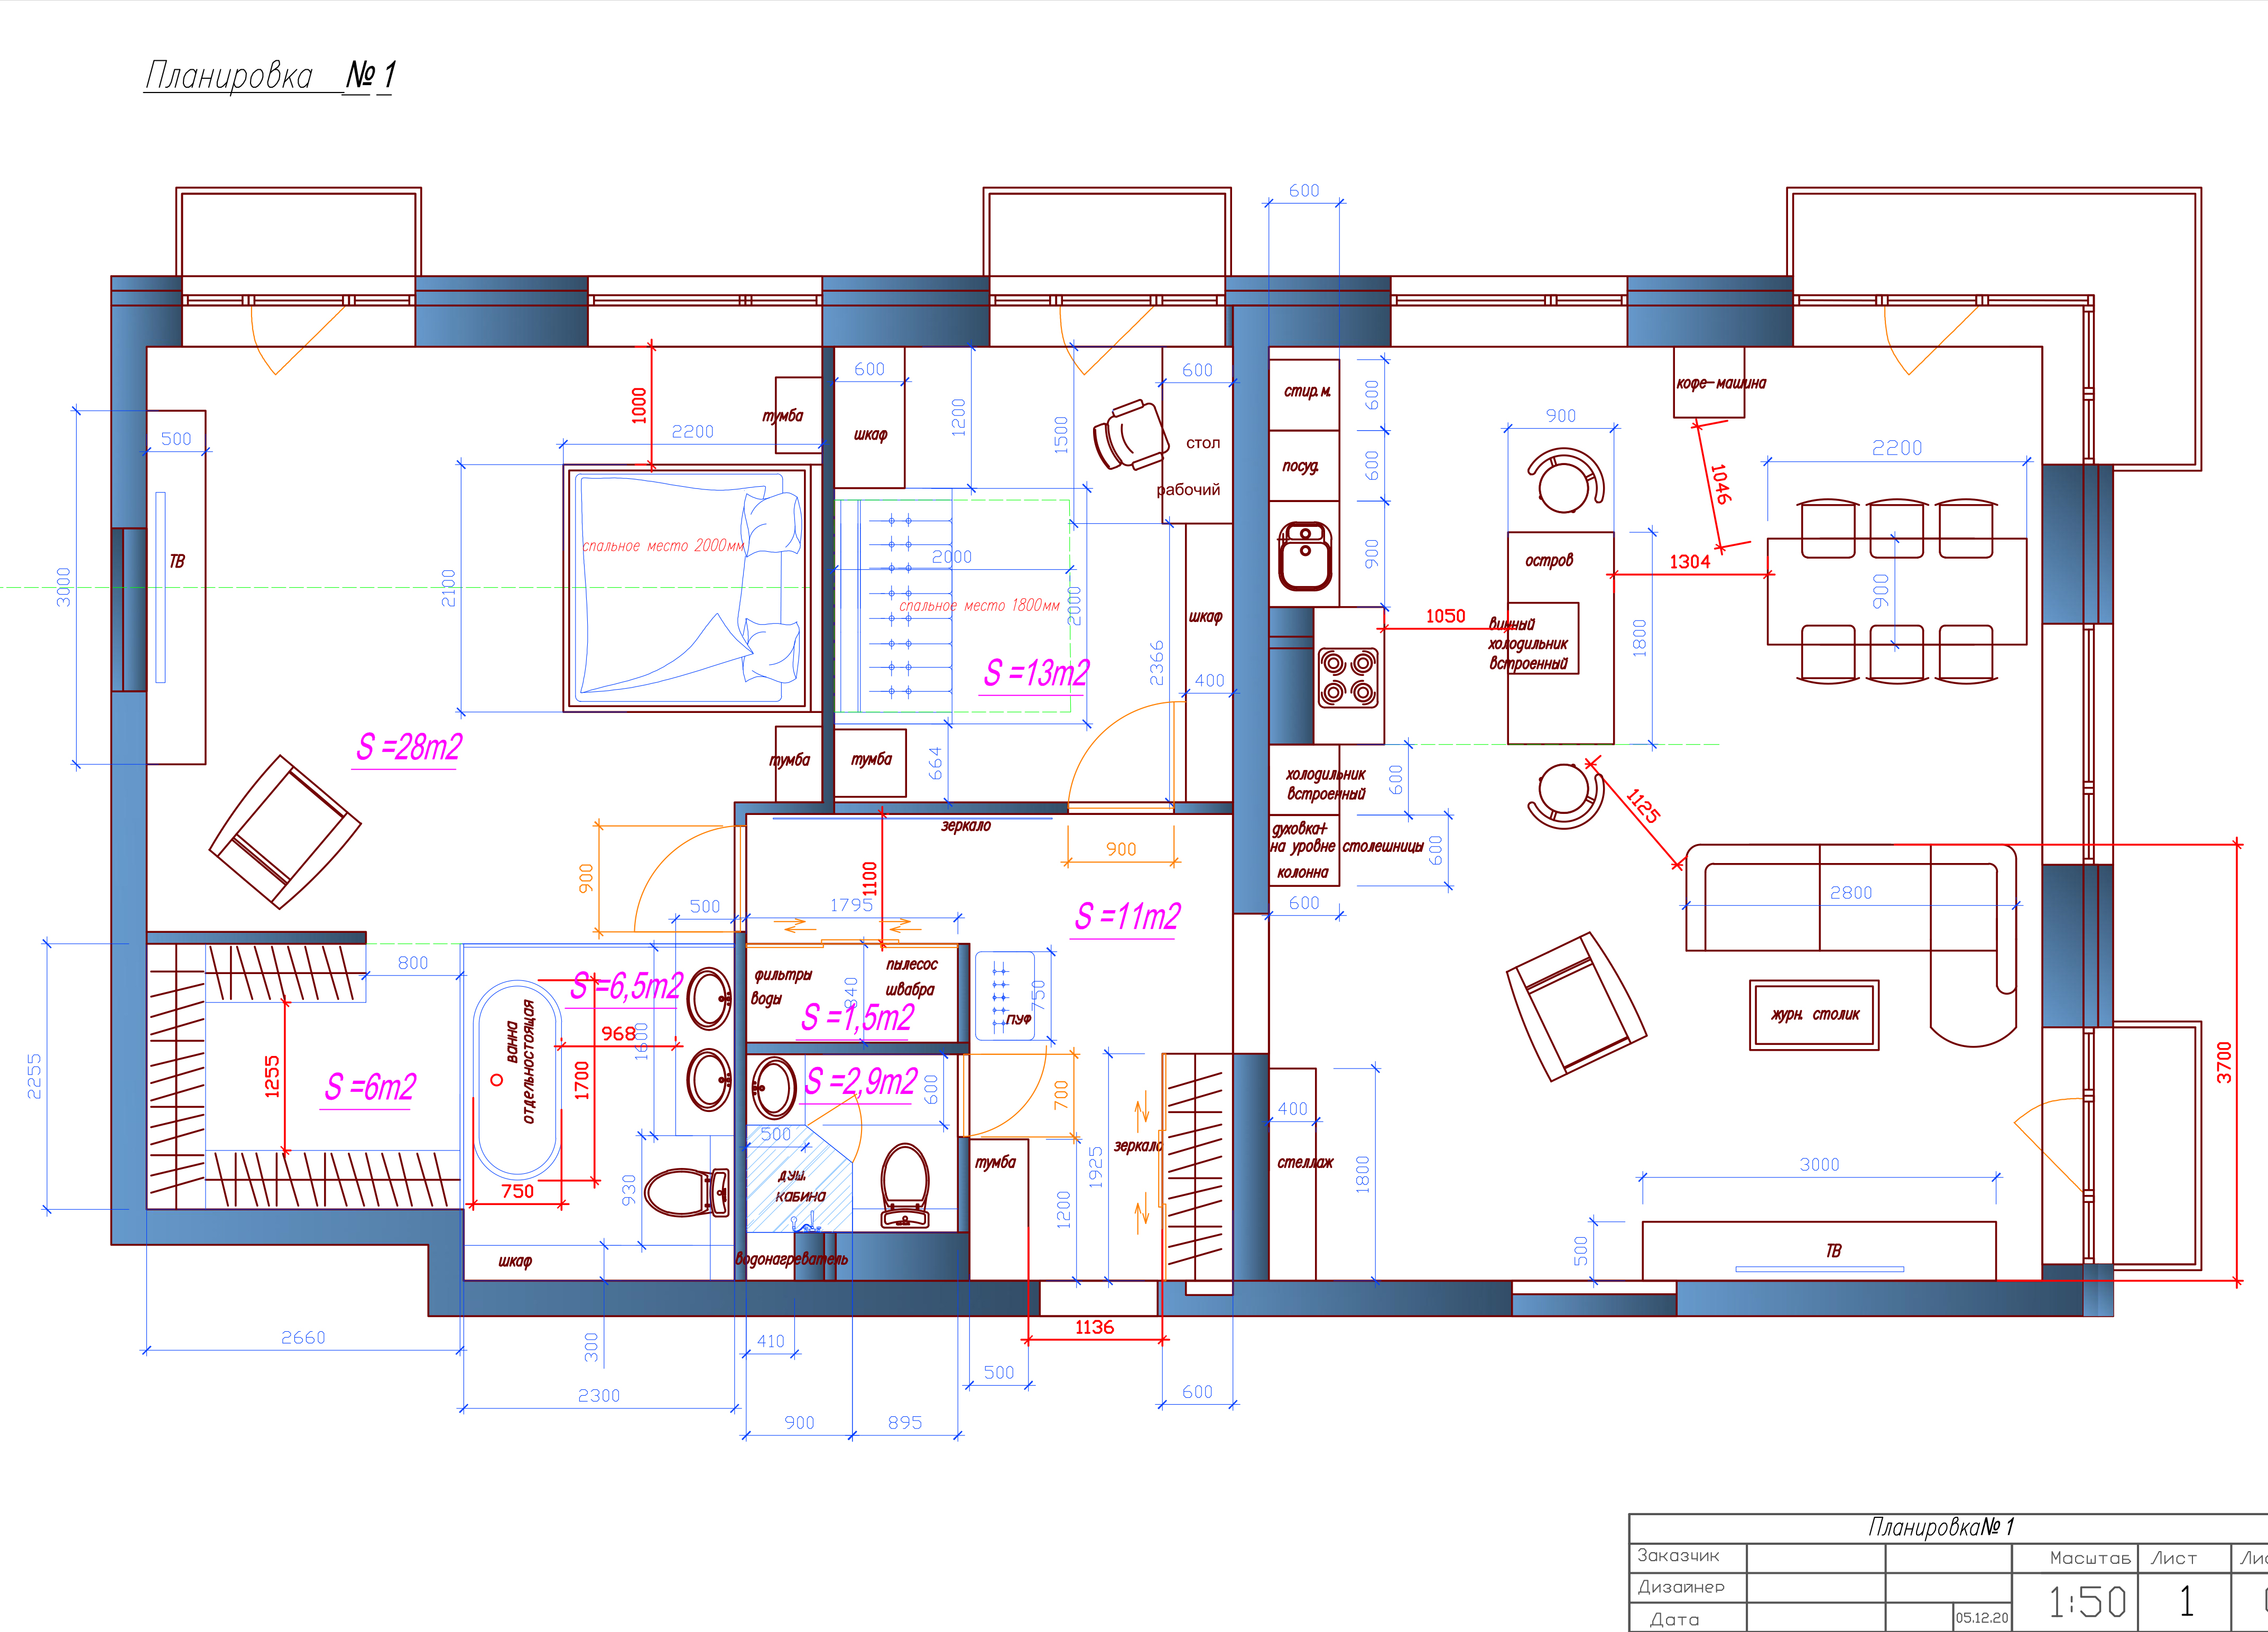 Изготовление планировки помещения с расстановкой мебели в программе AUTOCAD, перепланировка помещения.